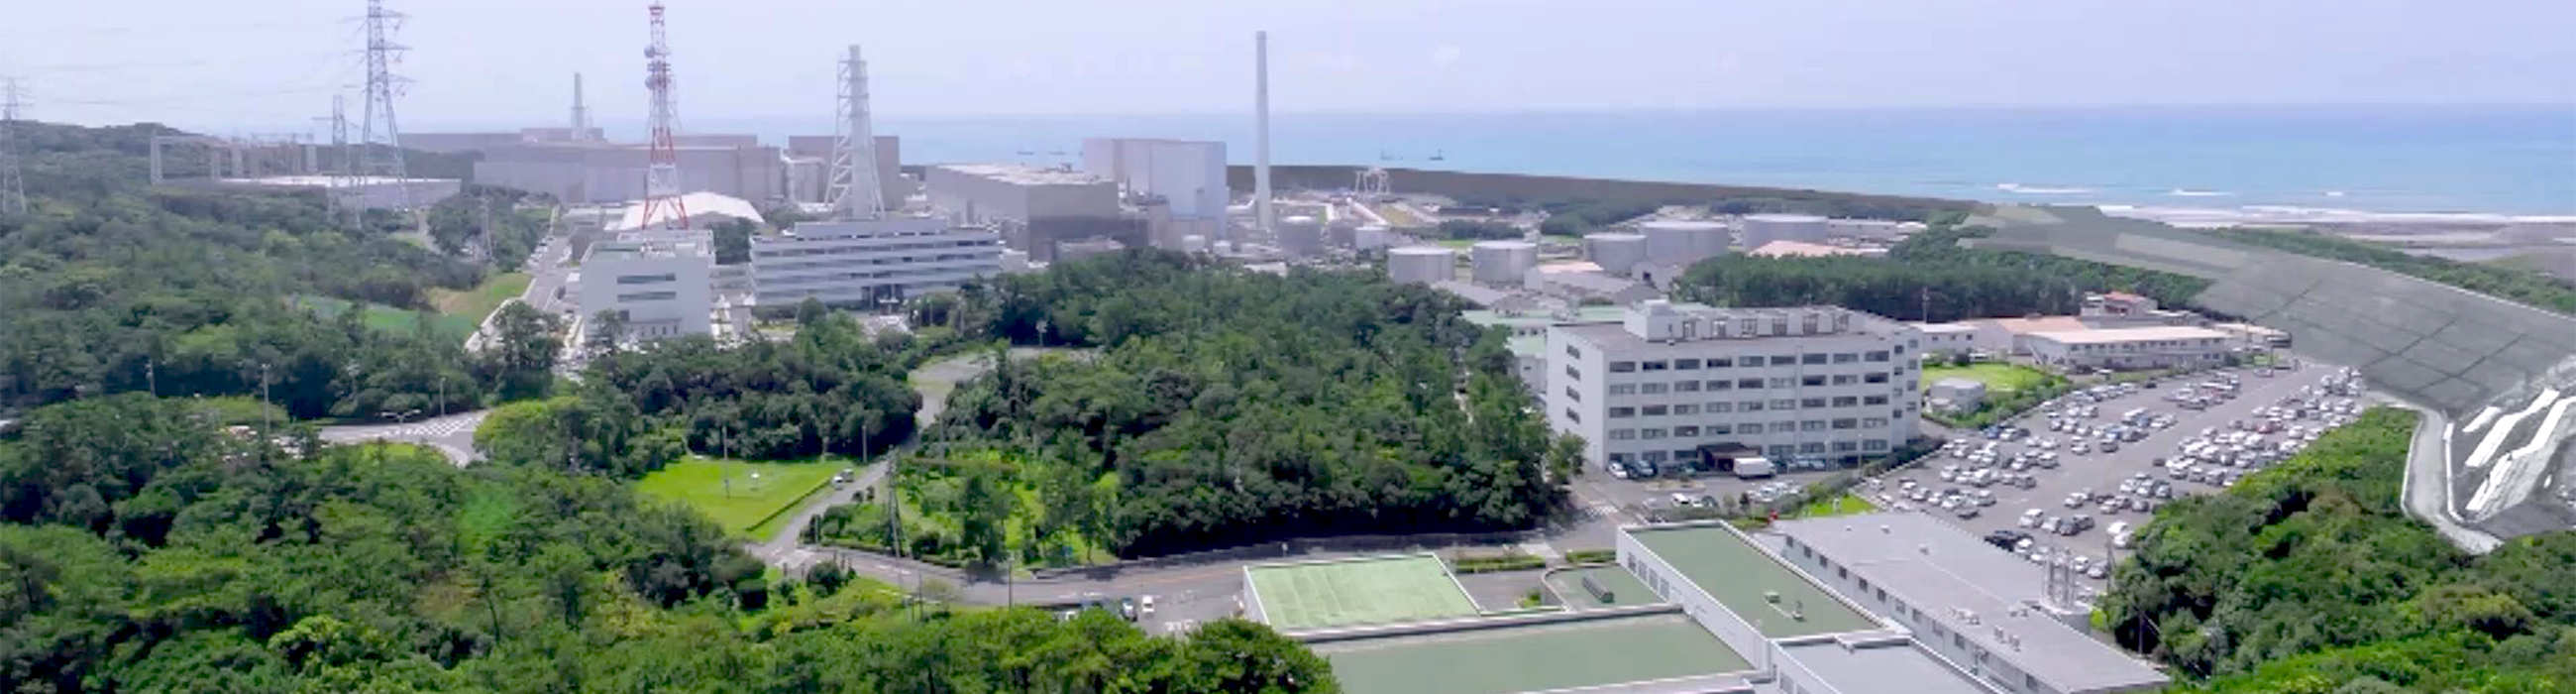 浜岡原子力発電所に関する情報を掲載しています。